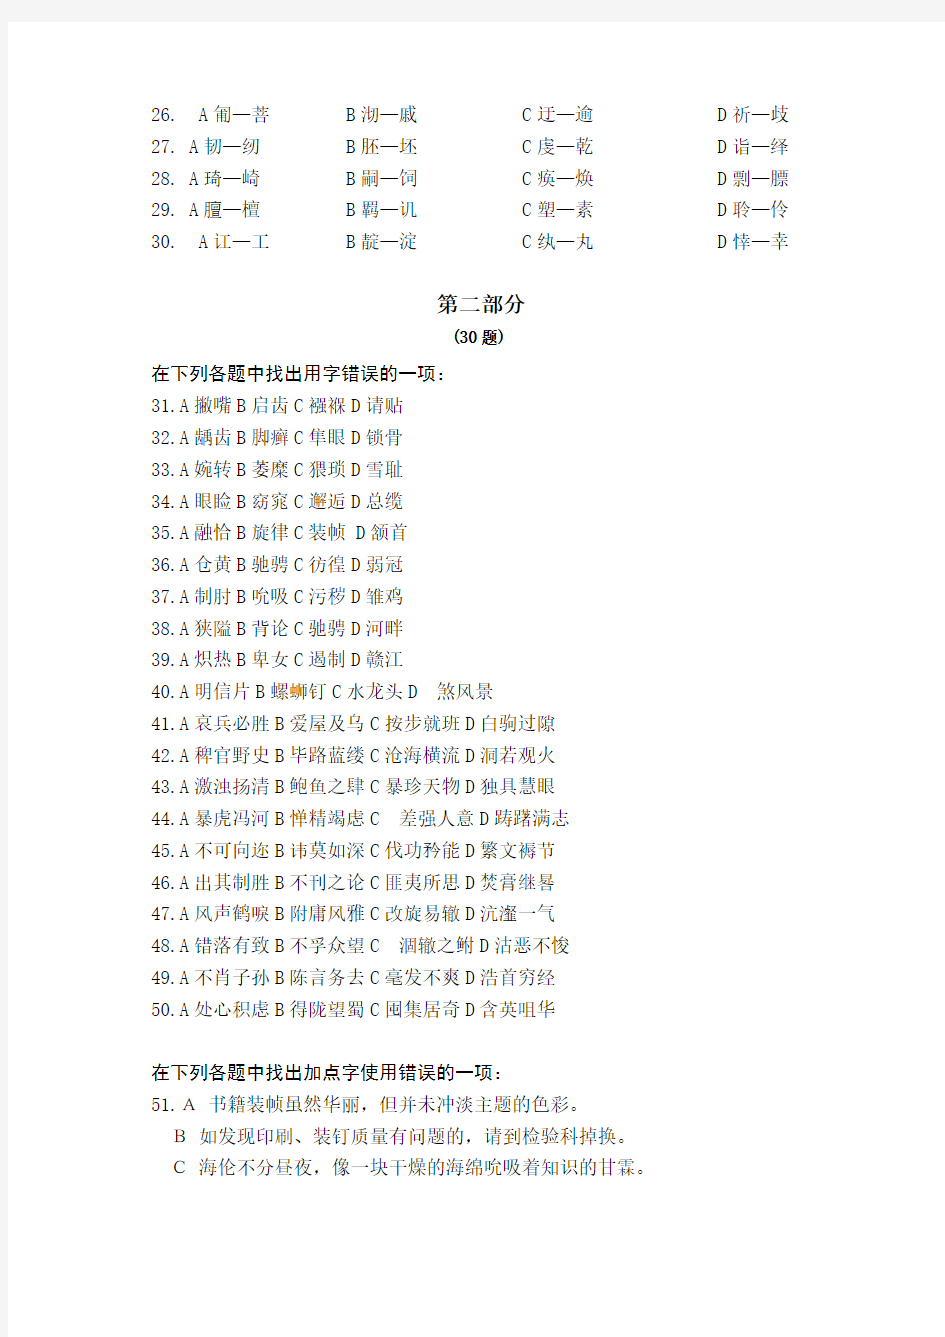 《汉字应用水平测试题》练习试卷及其参考答案 (1)